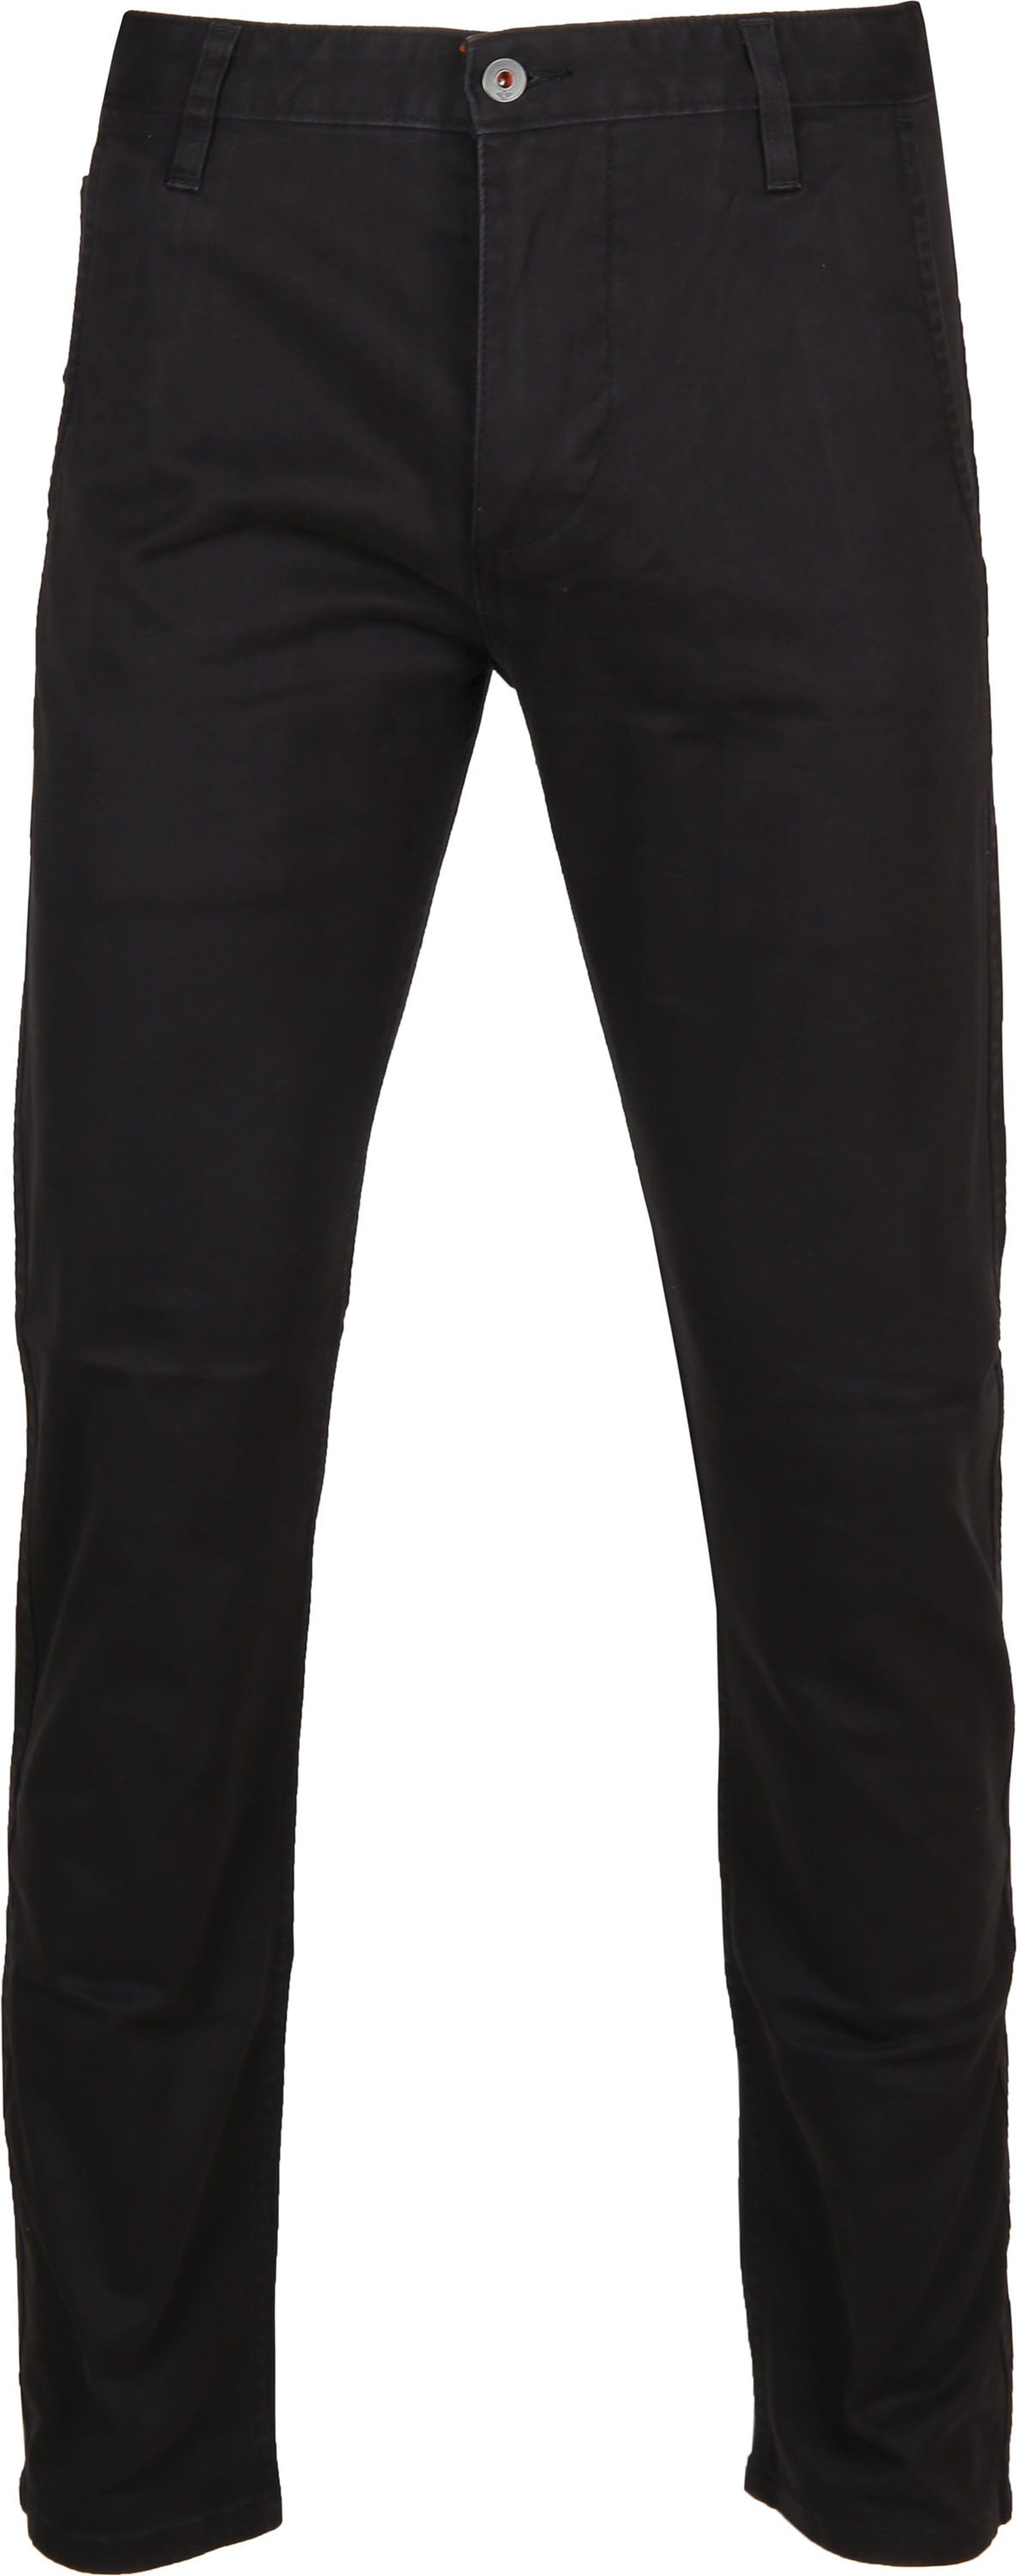 Dockers Trousers Alpha Stretch Black size W 29